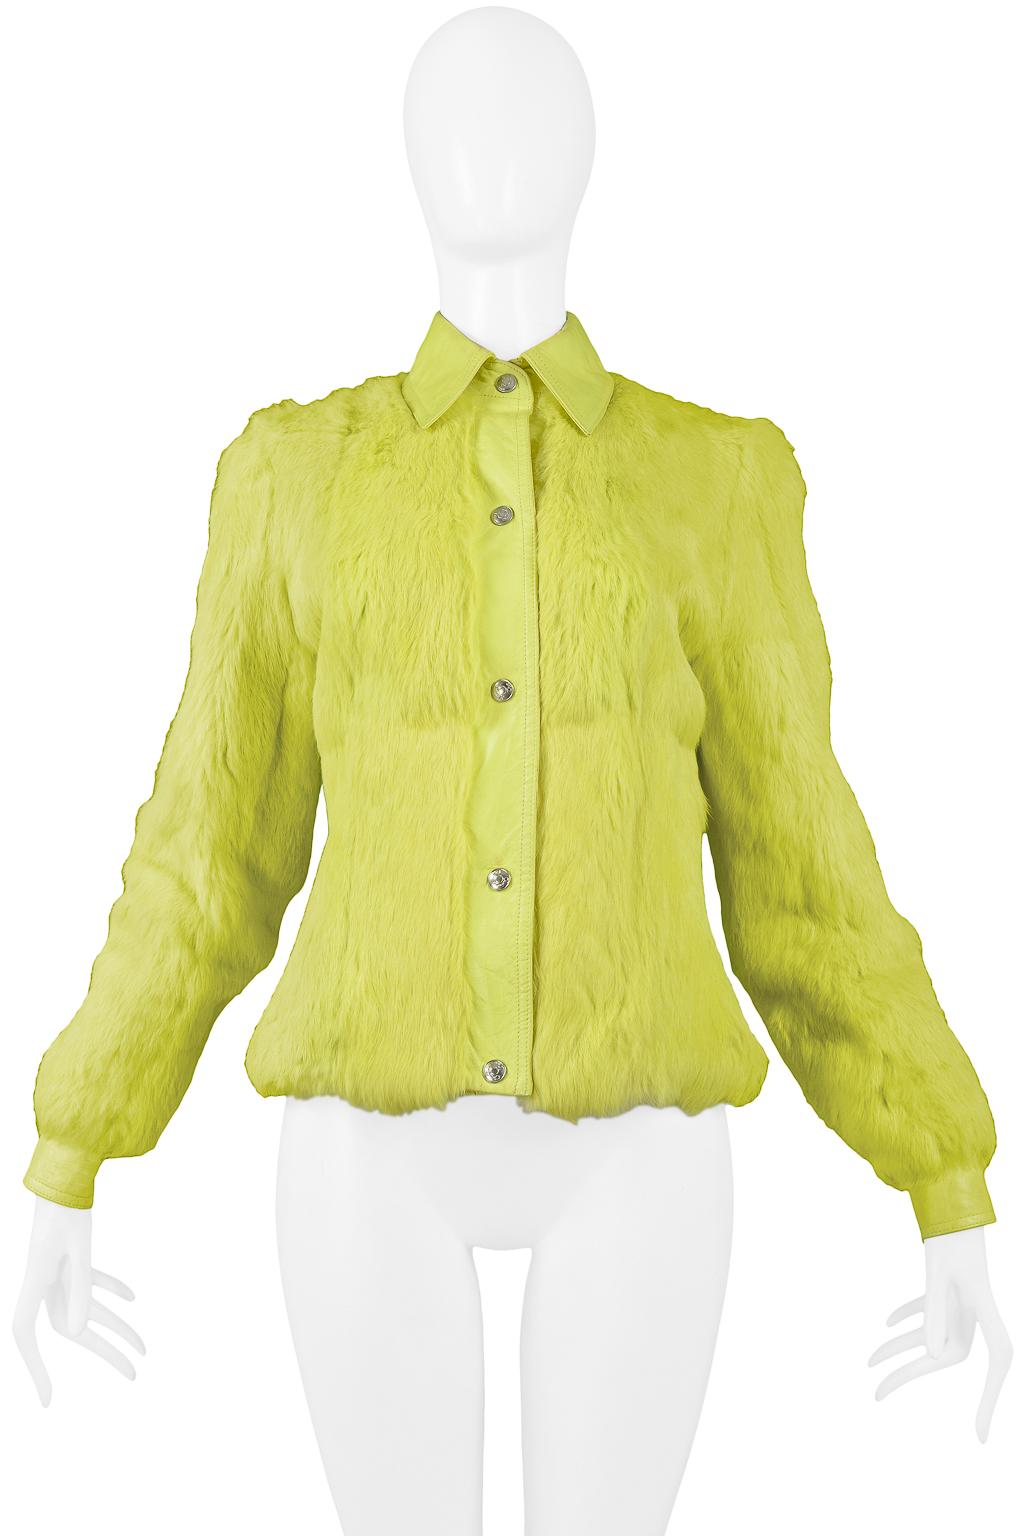 yellow dior jacket